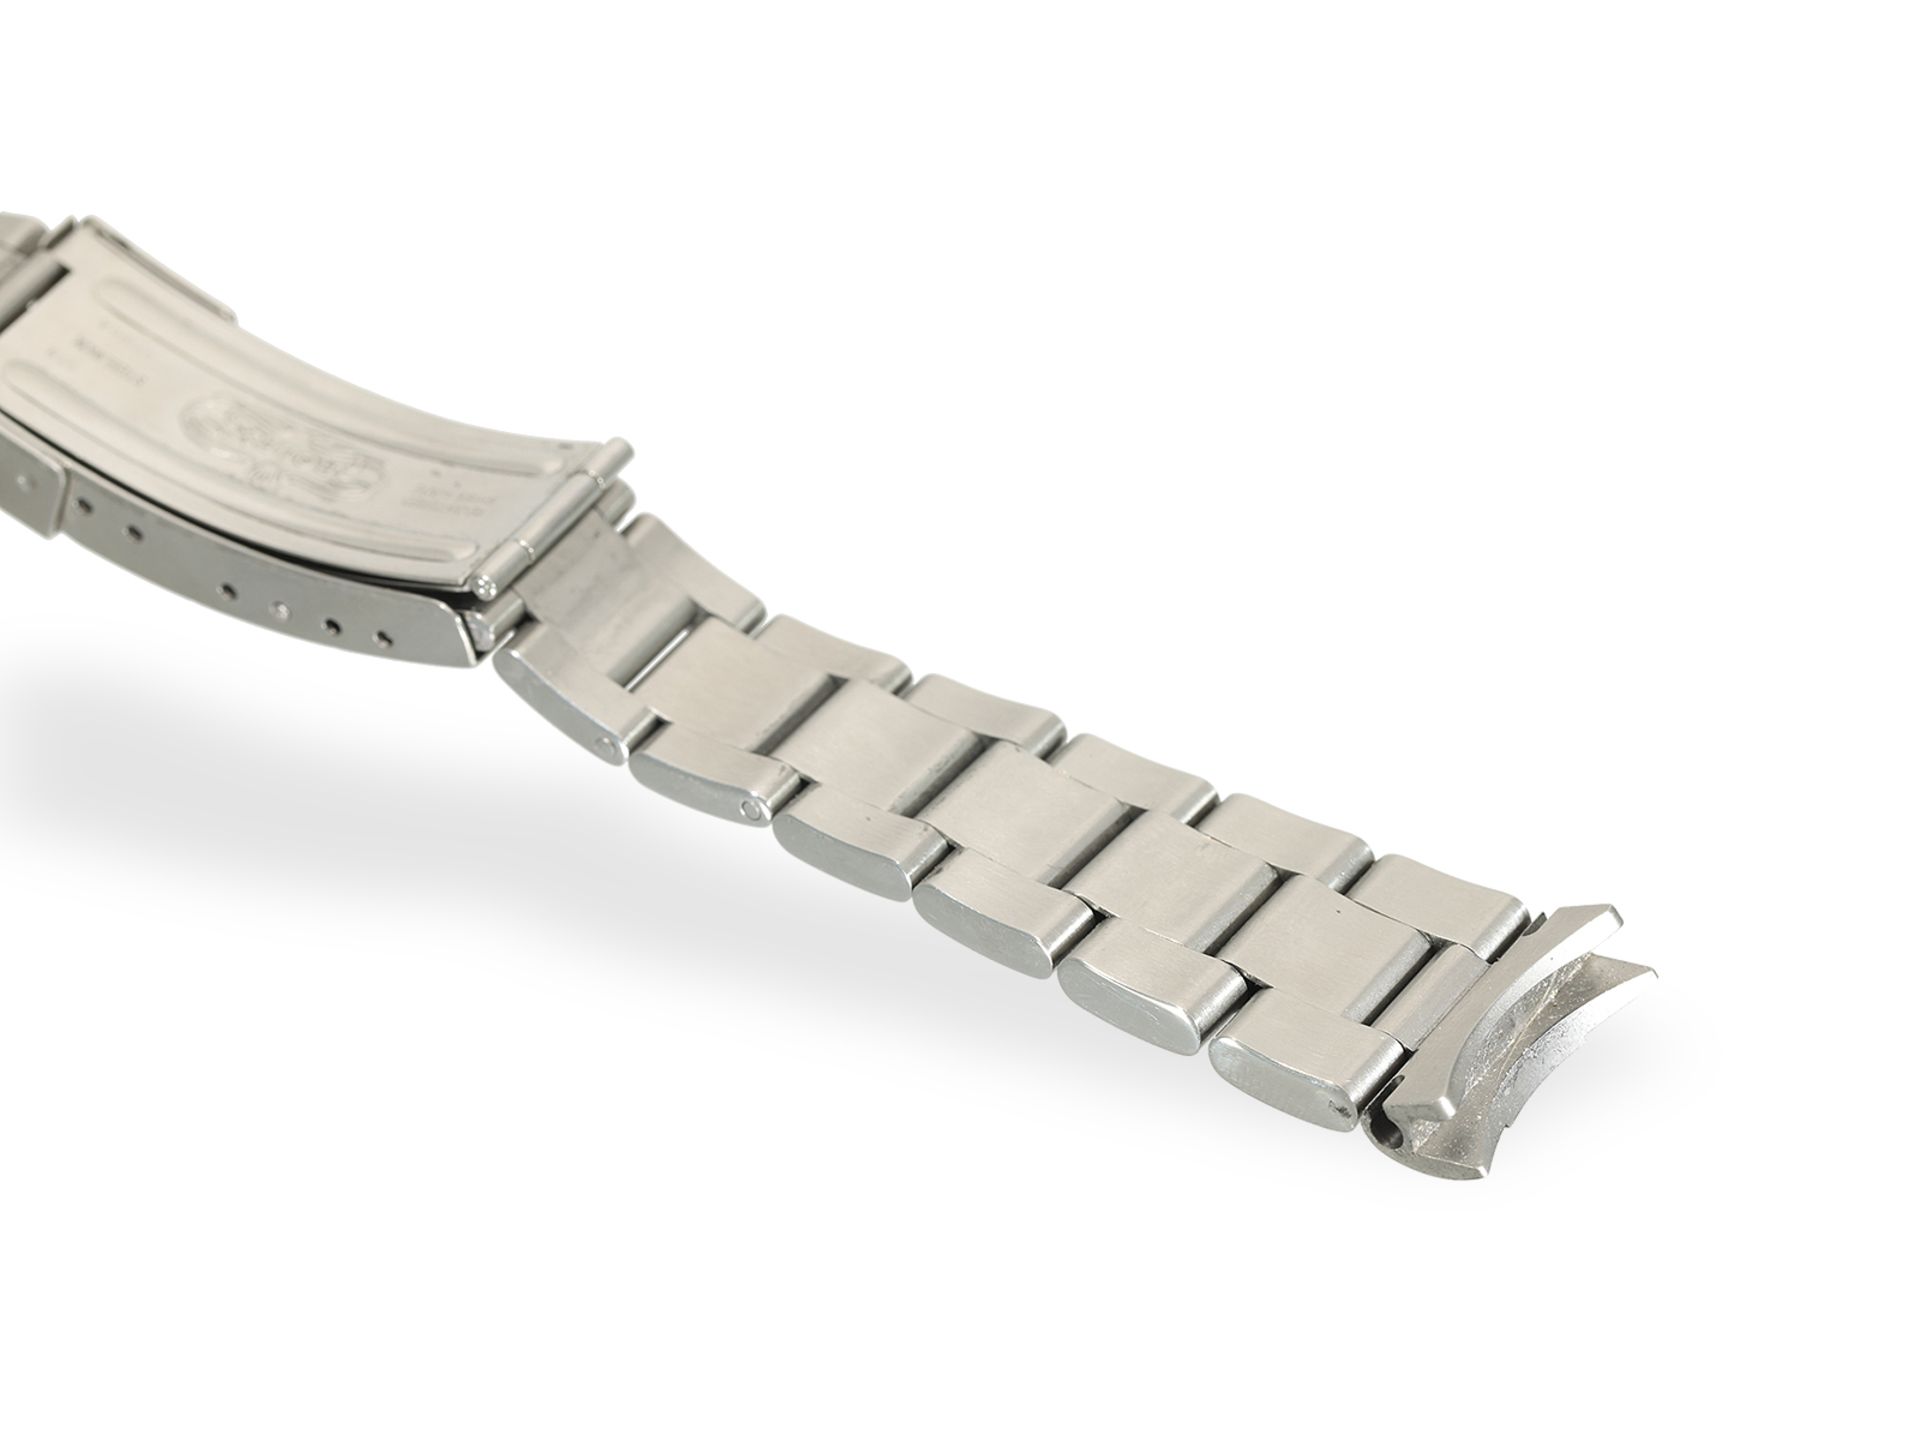 Armbanduhr: Rolex Sea-Dweller REF. 16600, Stahl, Box & Papiere, 2002/2003 - Bild 9 aus 10